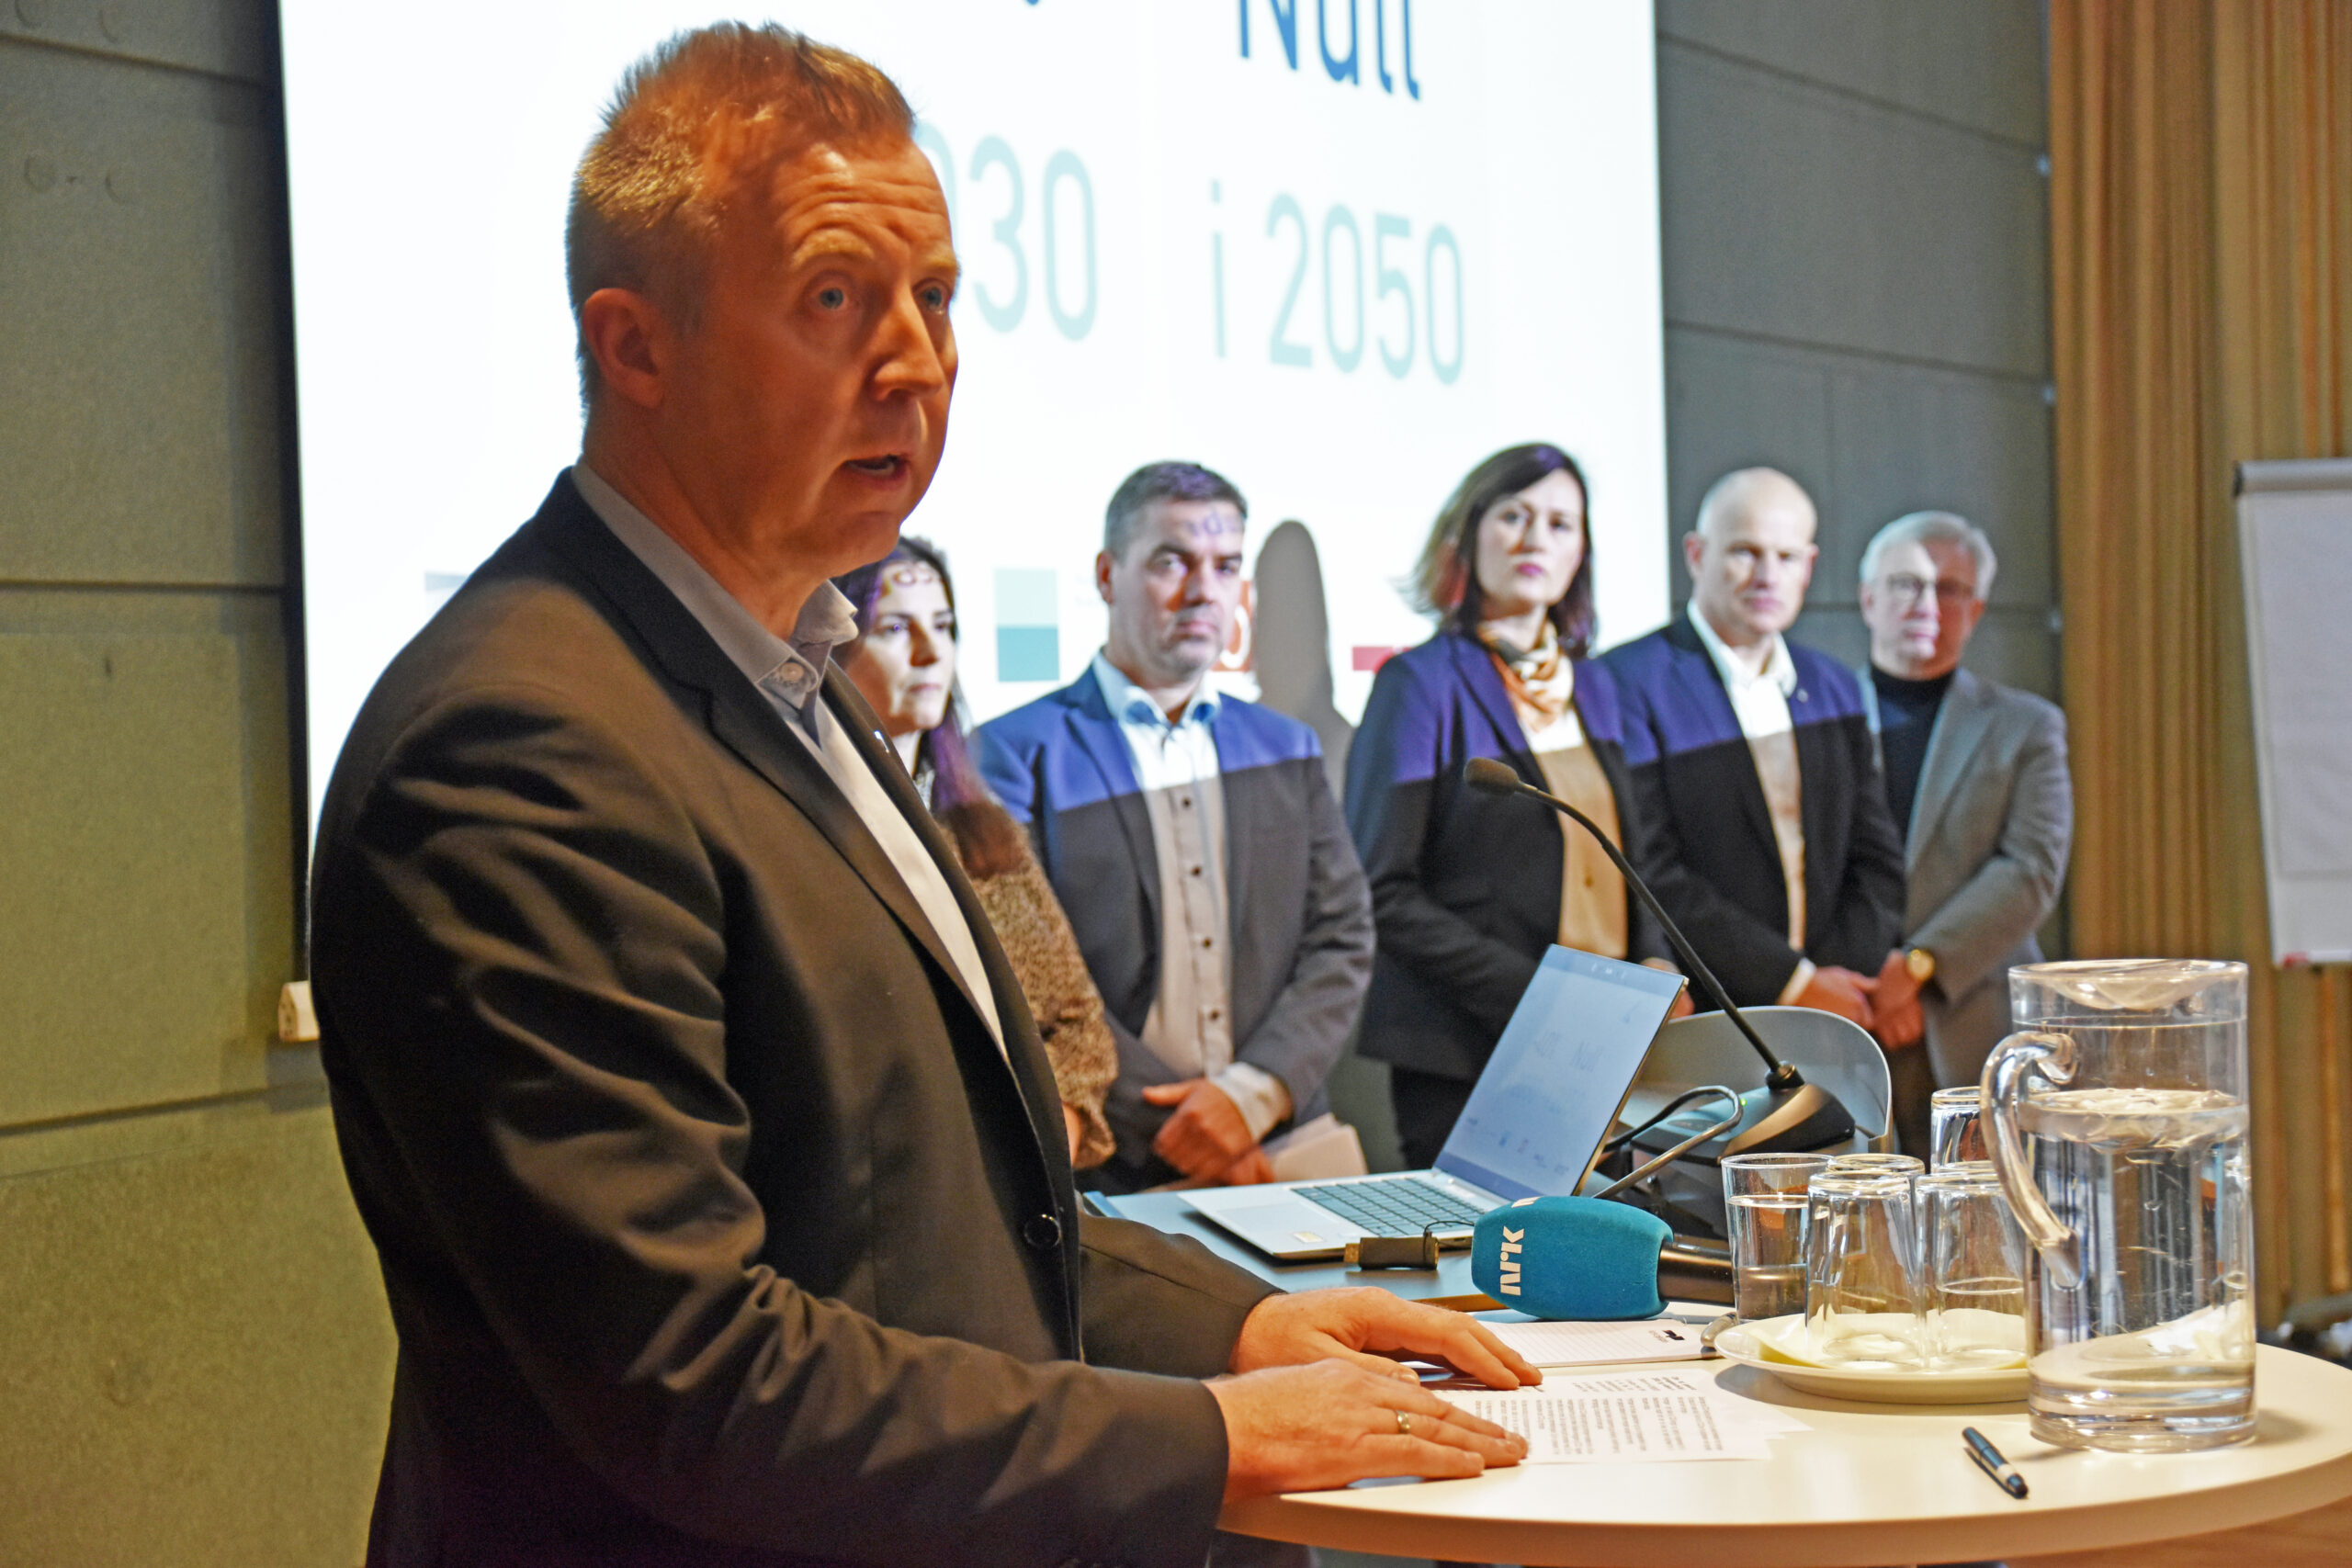 Forbundsleder Frode Alfheim i Industri Energi la fram forbundets synspunkter på klimamålene.